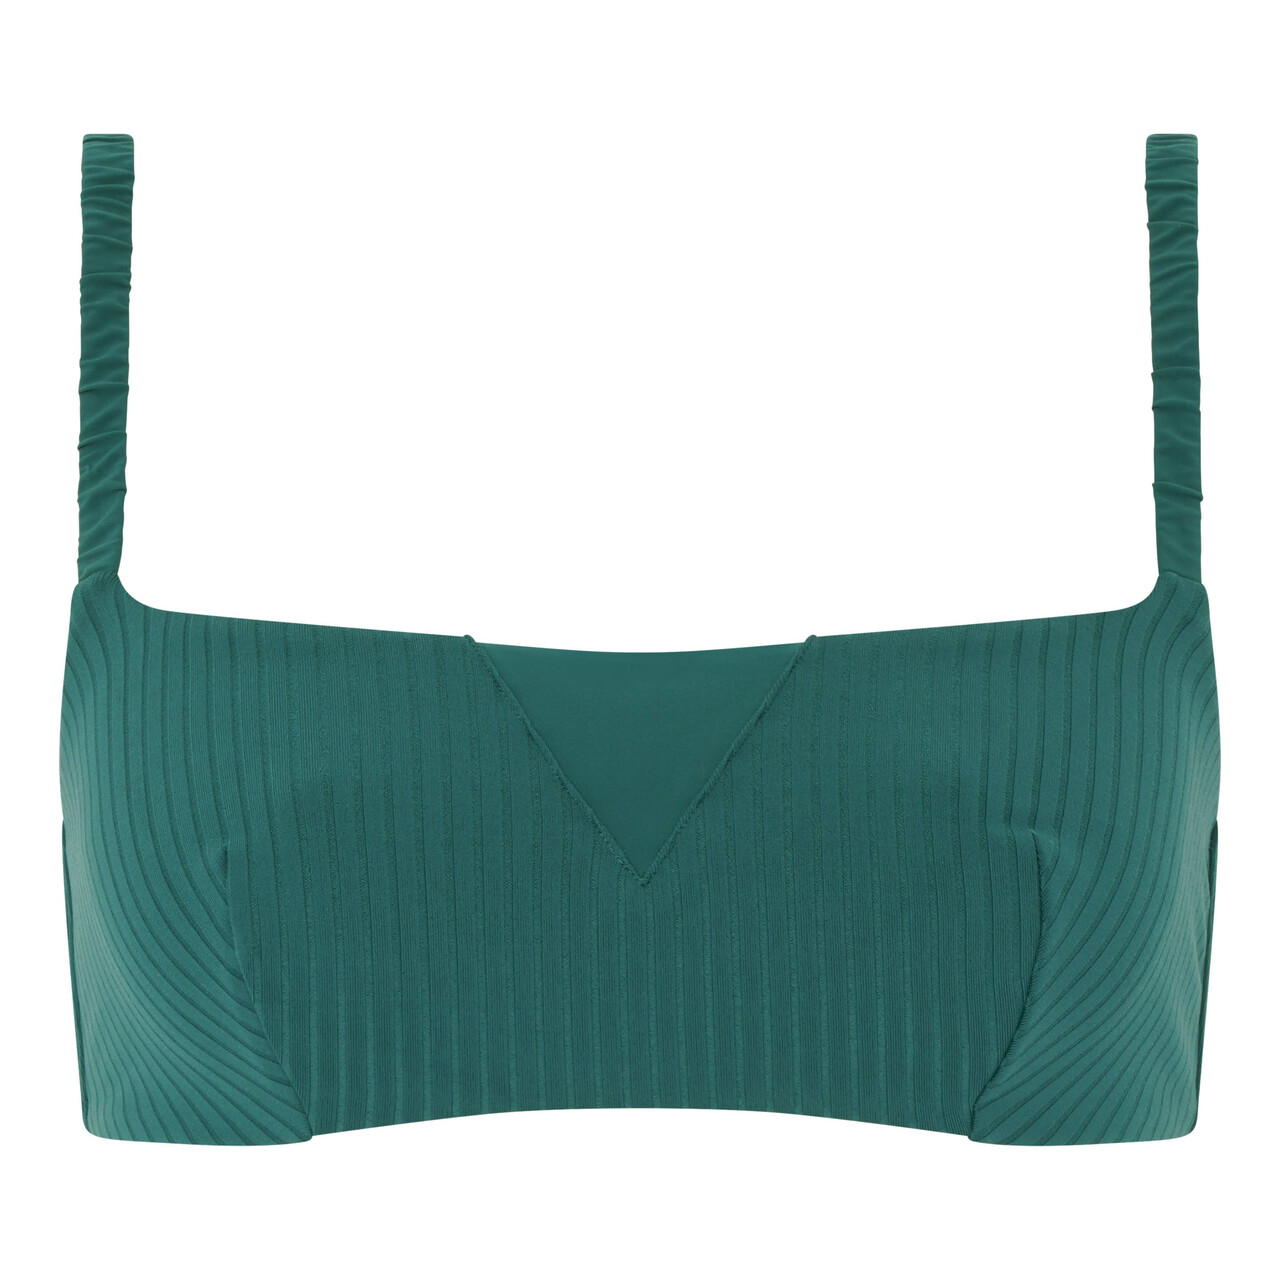 Passionata Liz Bikini Top, Farve: Grøn/blå, Størrelse: S, Dame